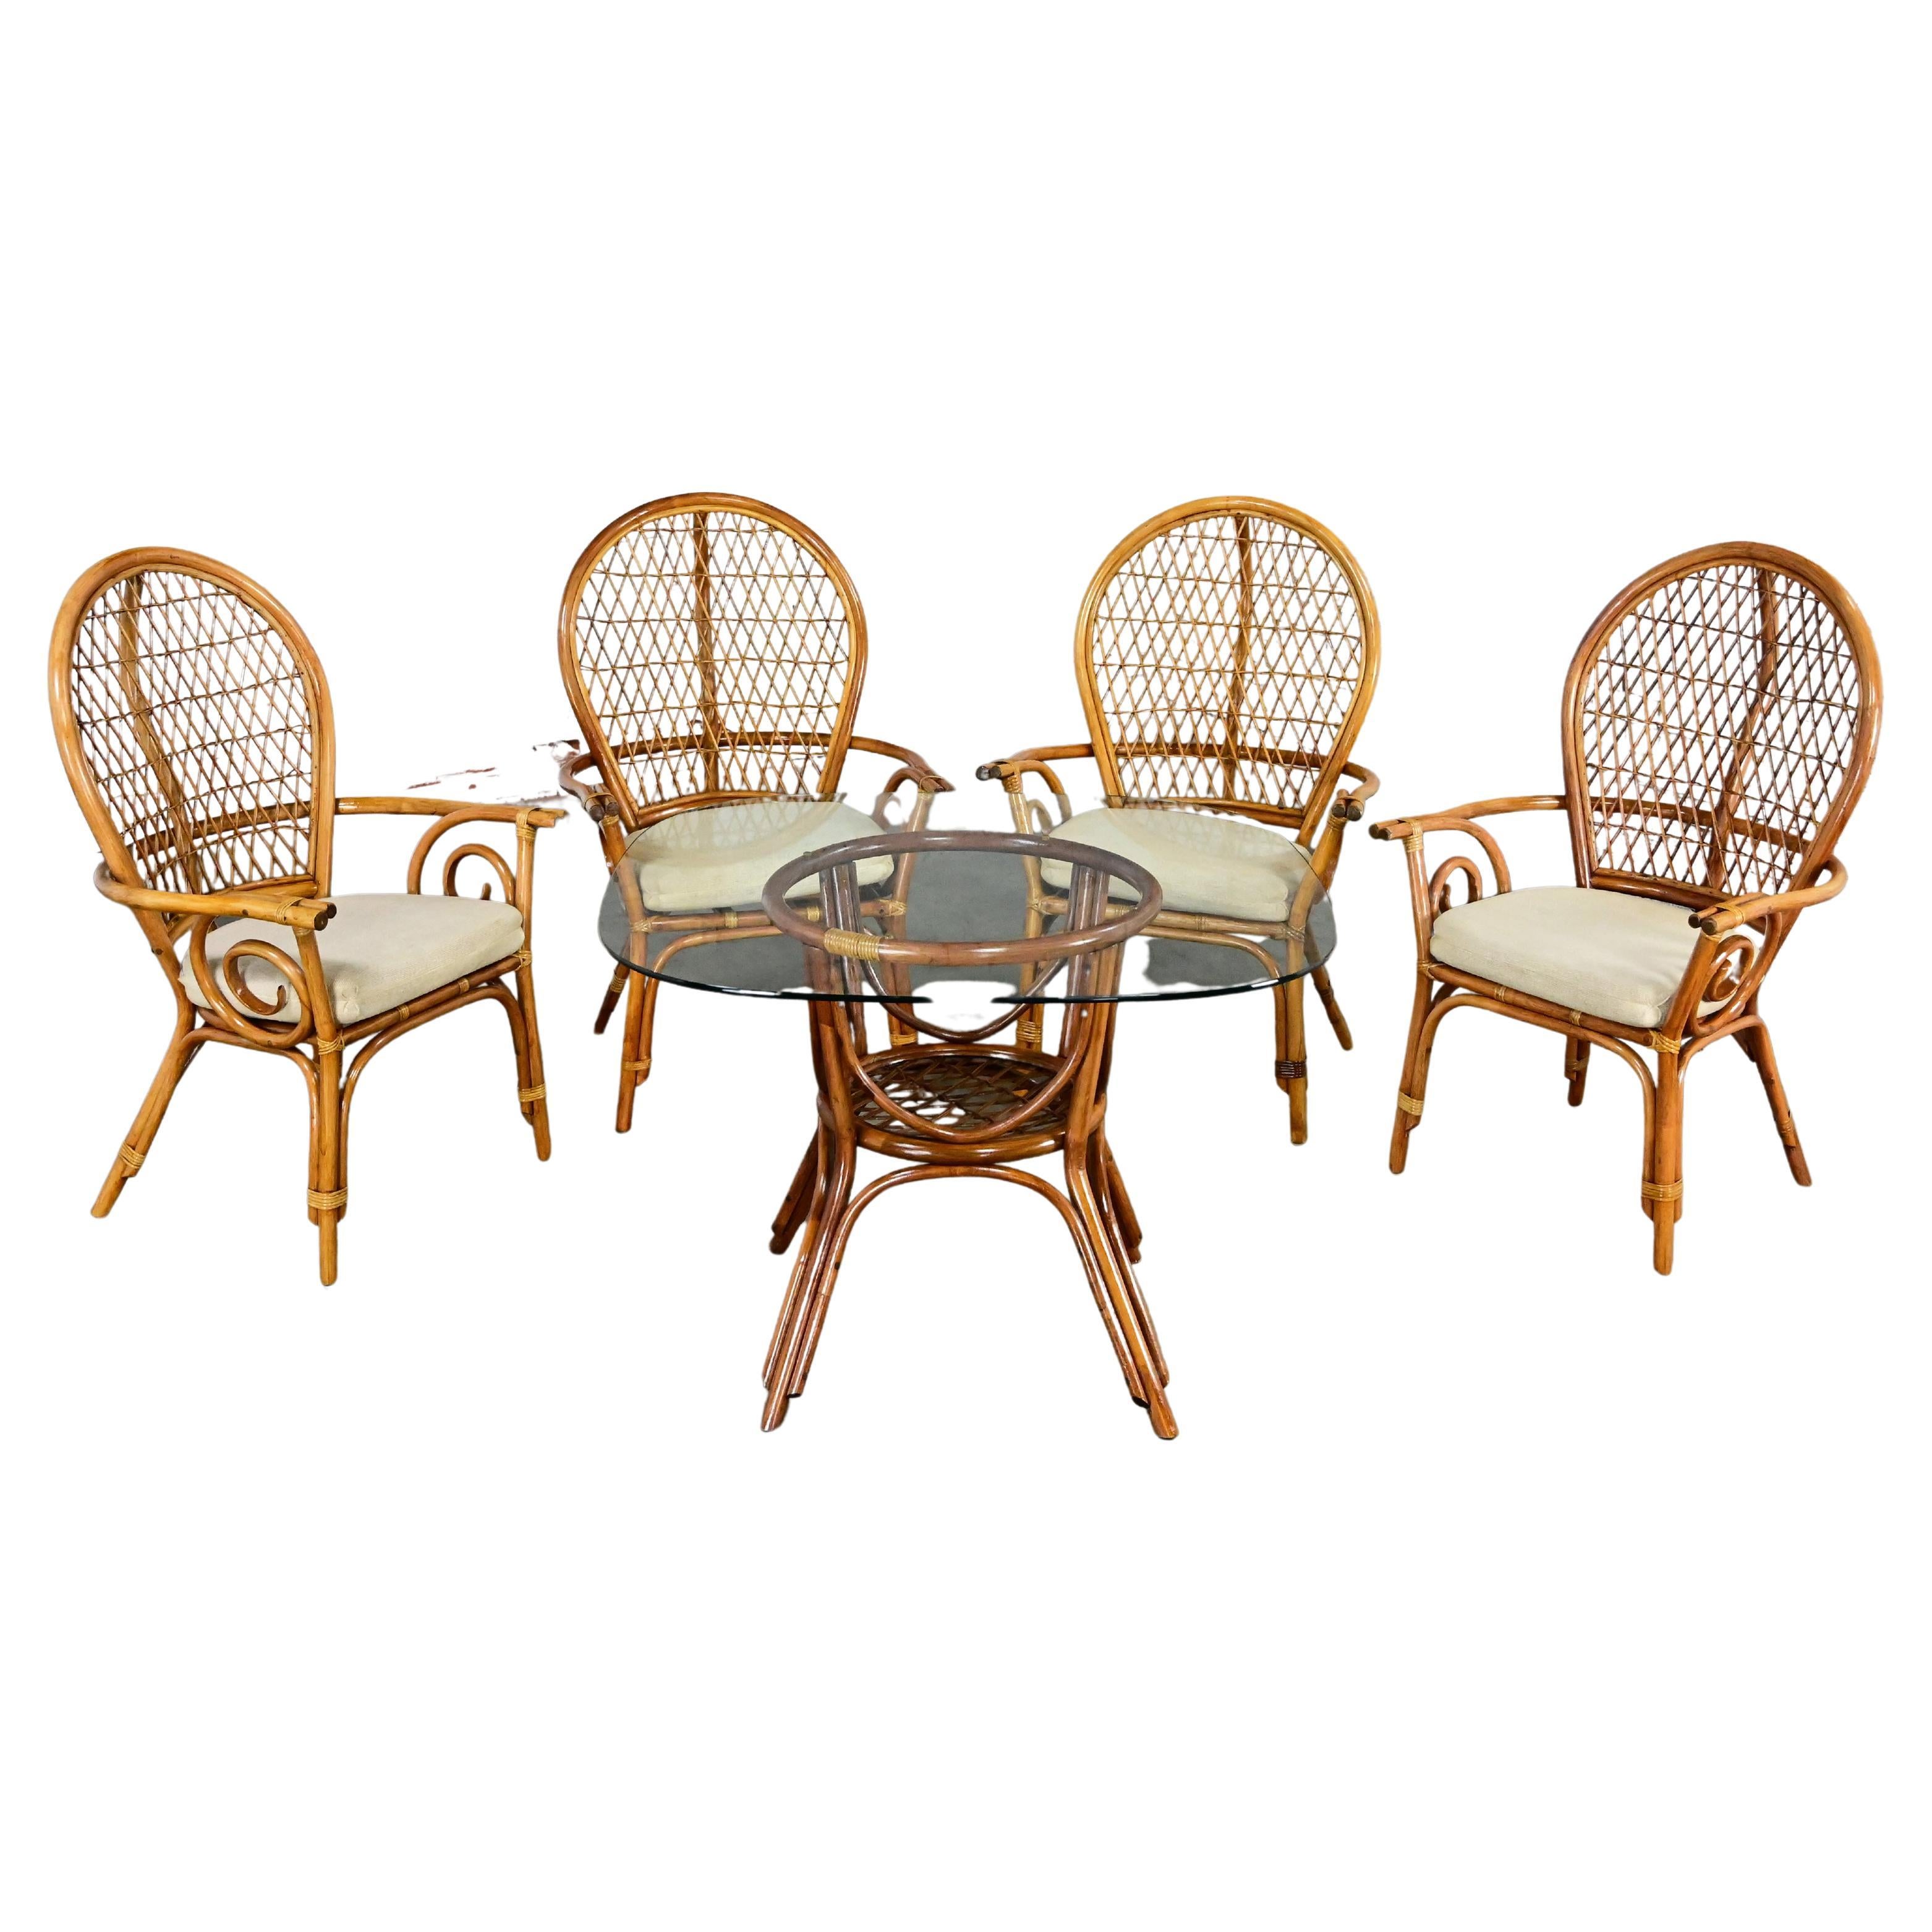 Table de salle à manger ou table de jeu de style îlot côtier en rotin avec 4 chaises un ensemble